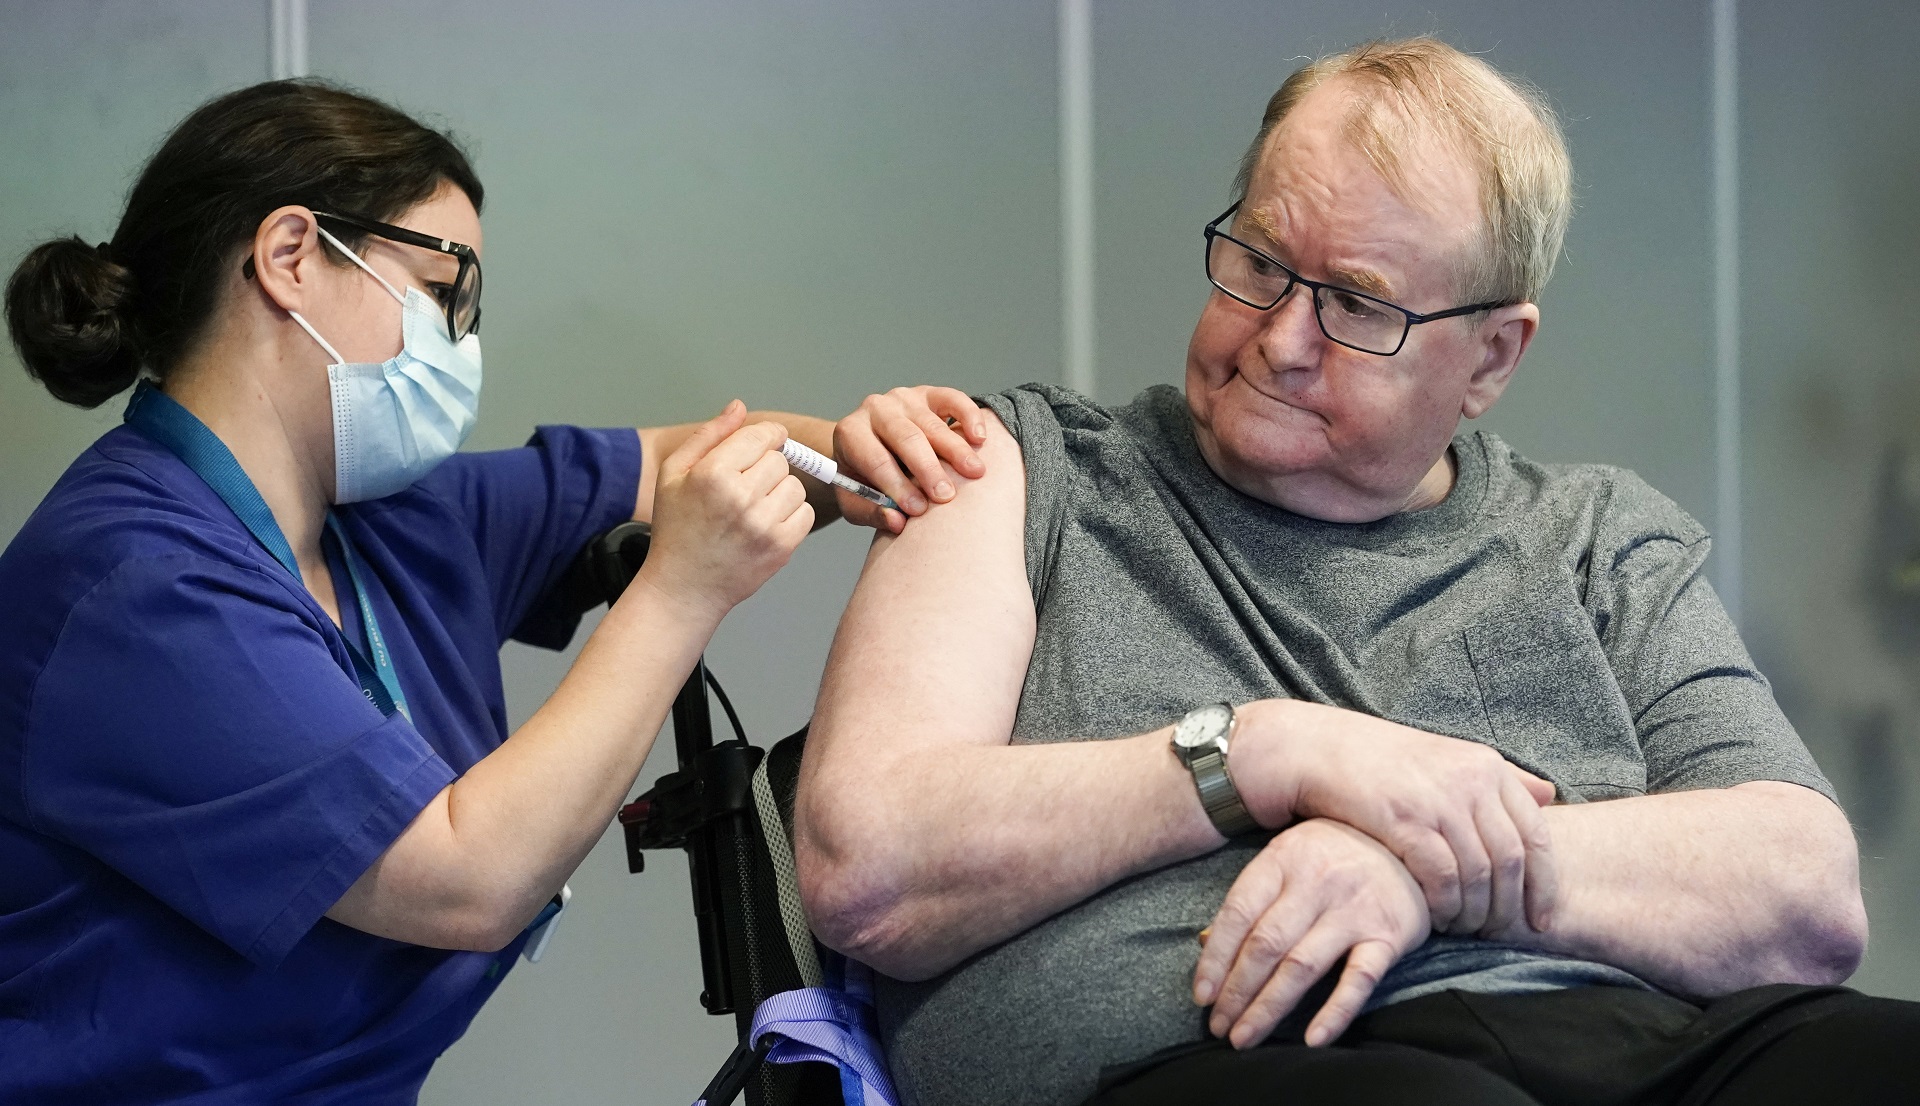 La enfermera Maria Golding vacuna a Svein Andersen, en Oslo, la primera persona en Noruega en recibir la vacuna contra el coronavirus, el 27 de diciembre de 2020. (Fredrik Hagen/NTB via AP)